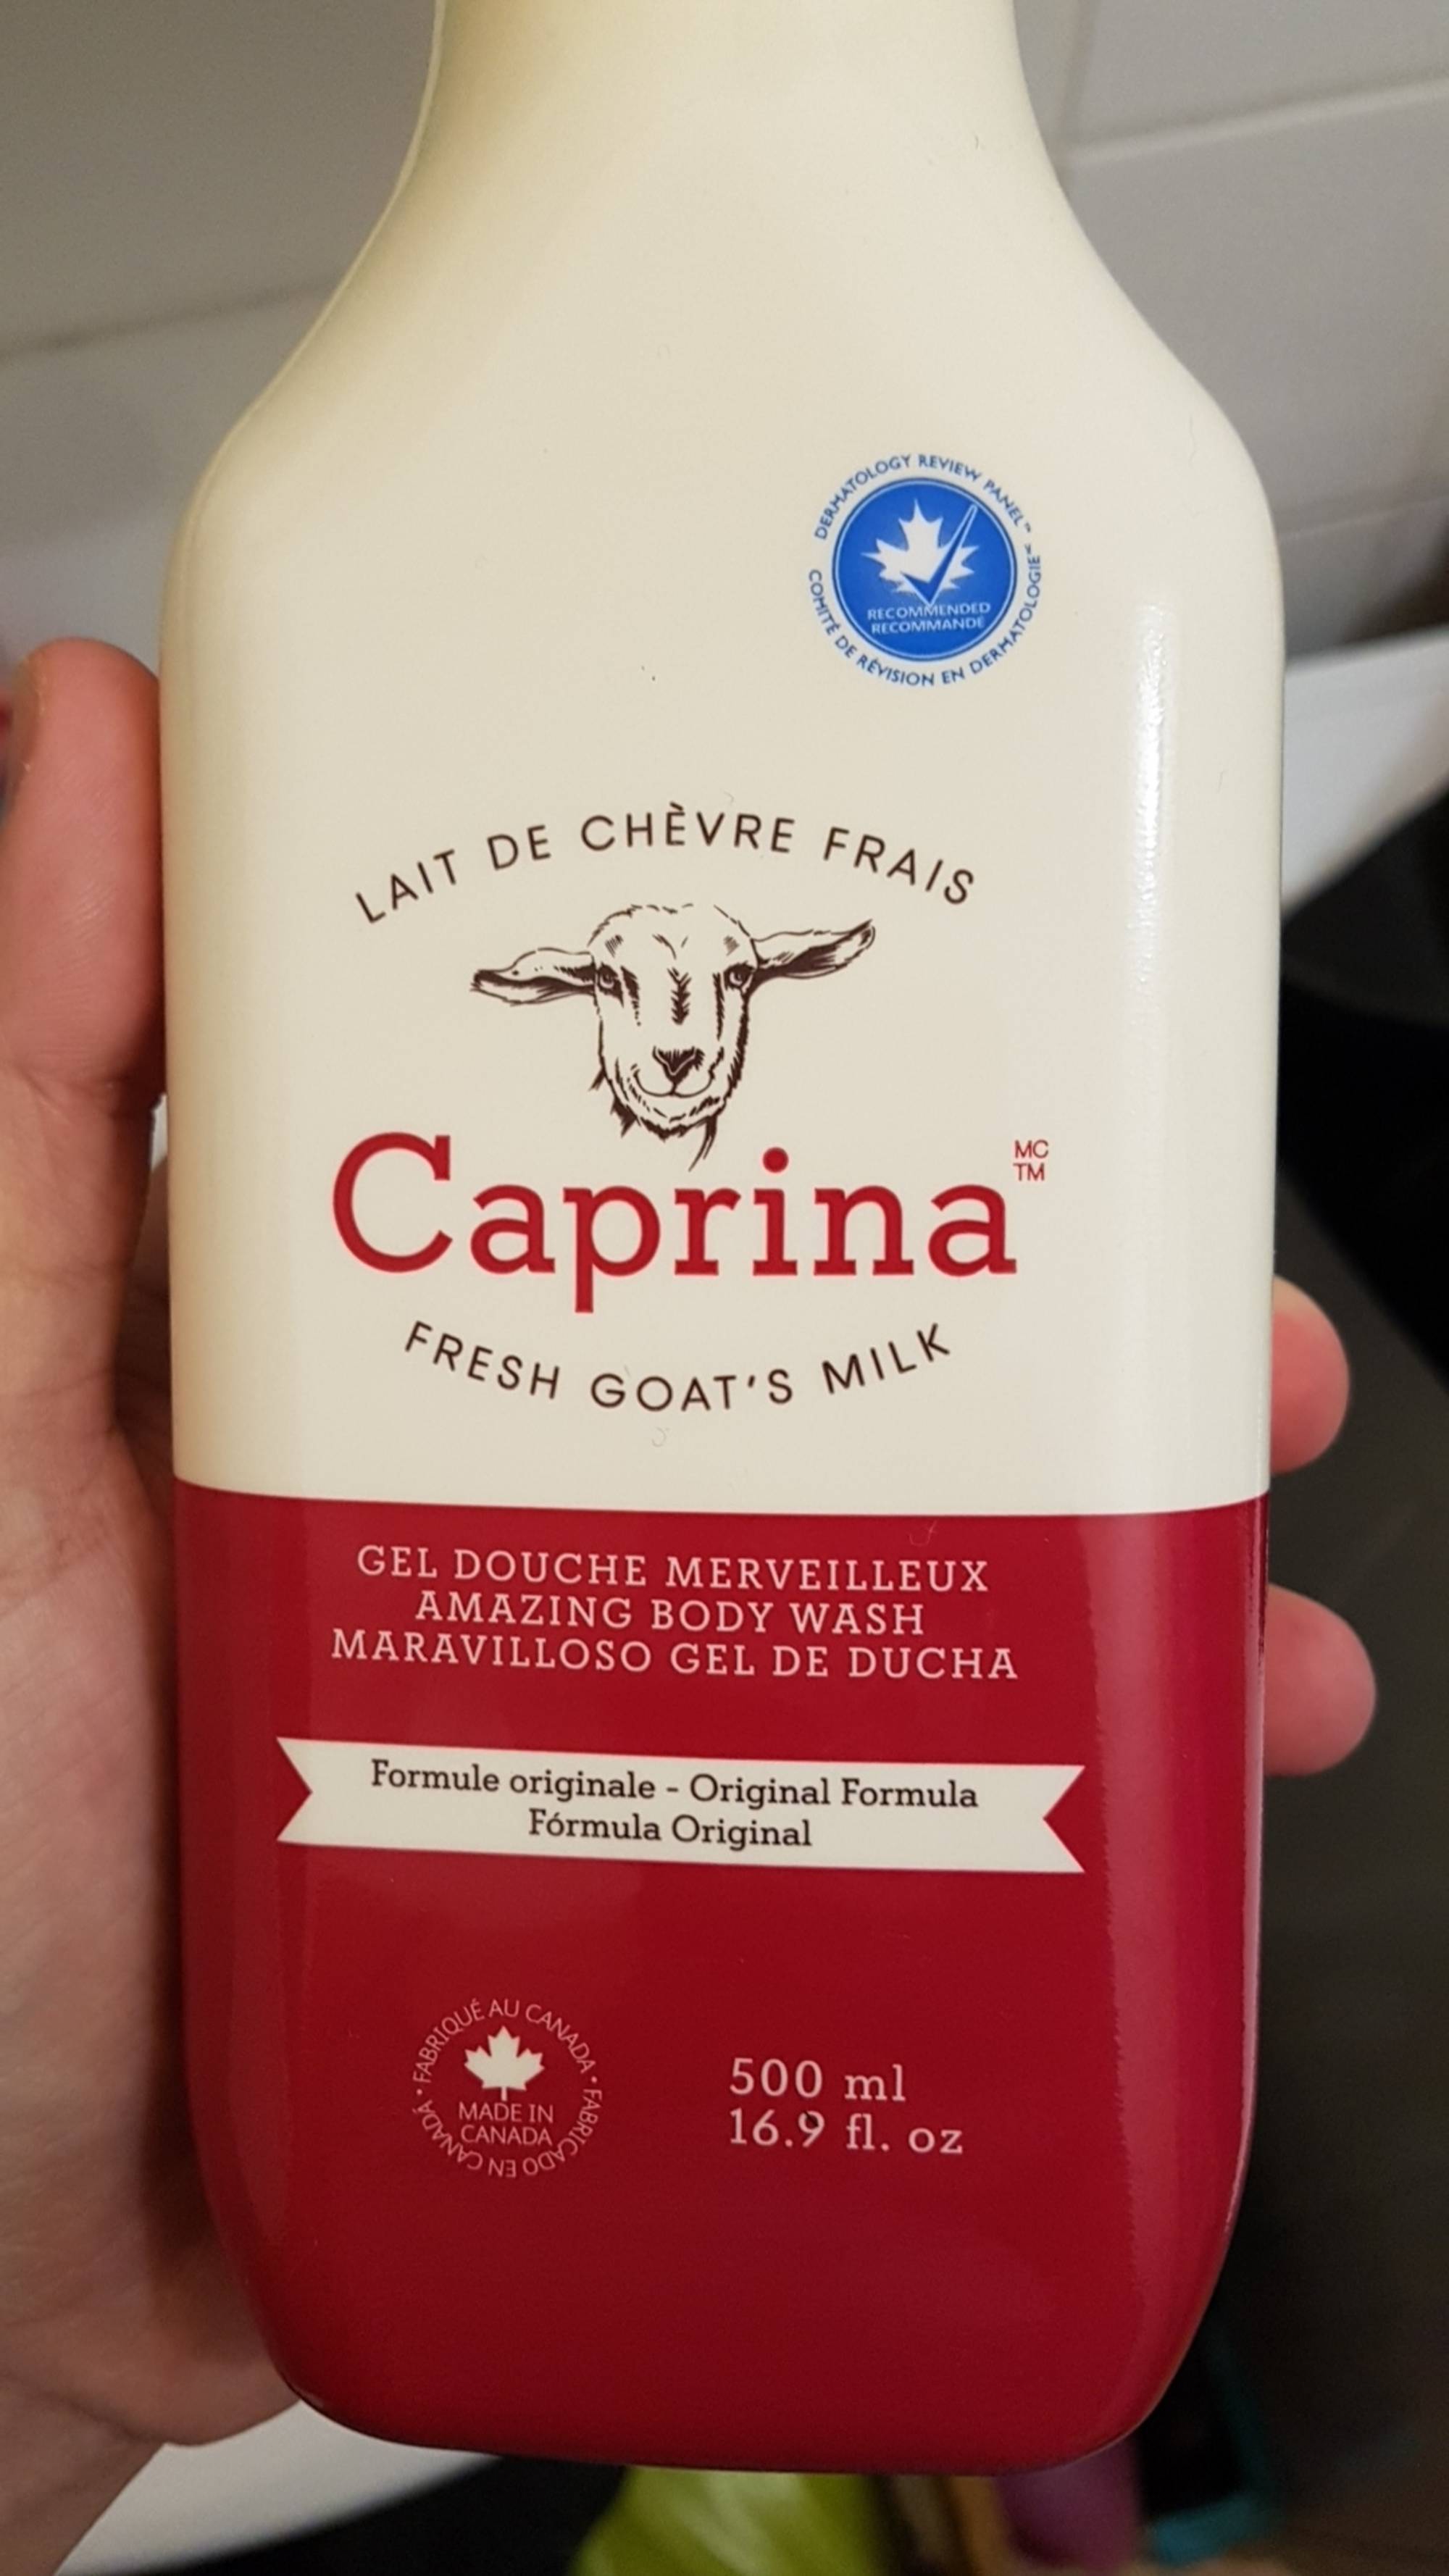 CAPRINA - Lait de chèvre frais - Gel douche merveilleux